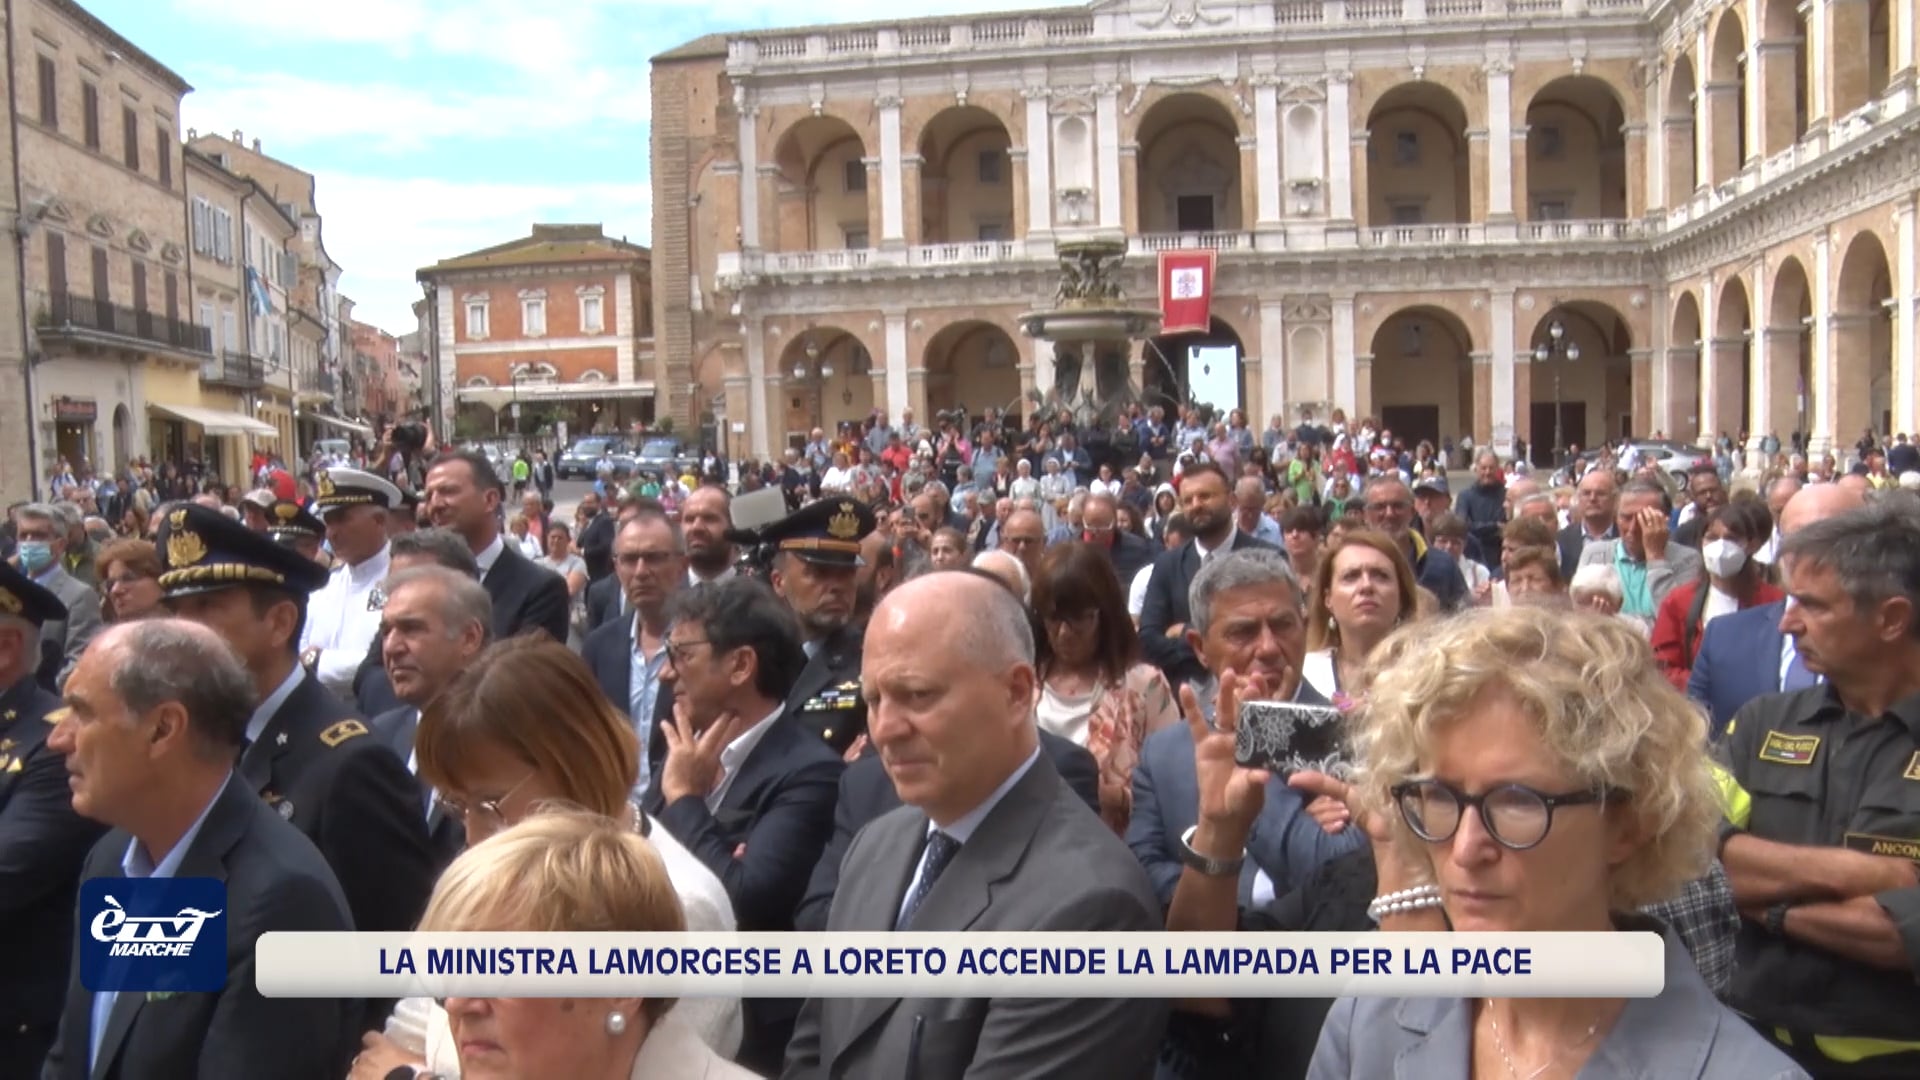 La Ministra dell'Interno Luciana Lamorgese a Loreto accende la lampada per la Pace nel mondo - VIDEO